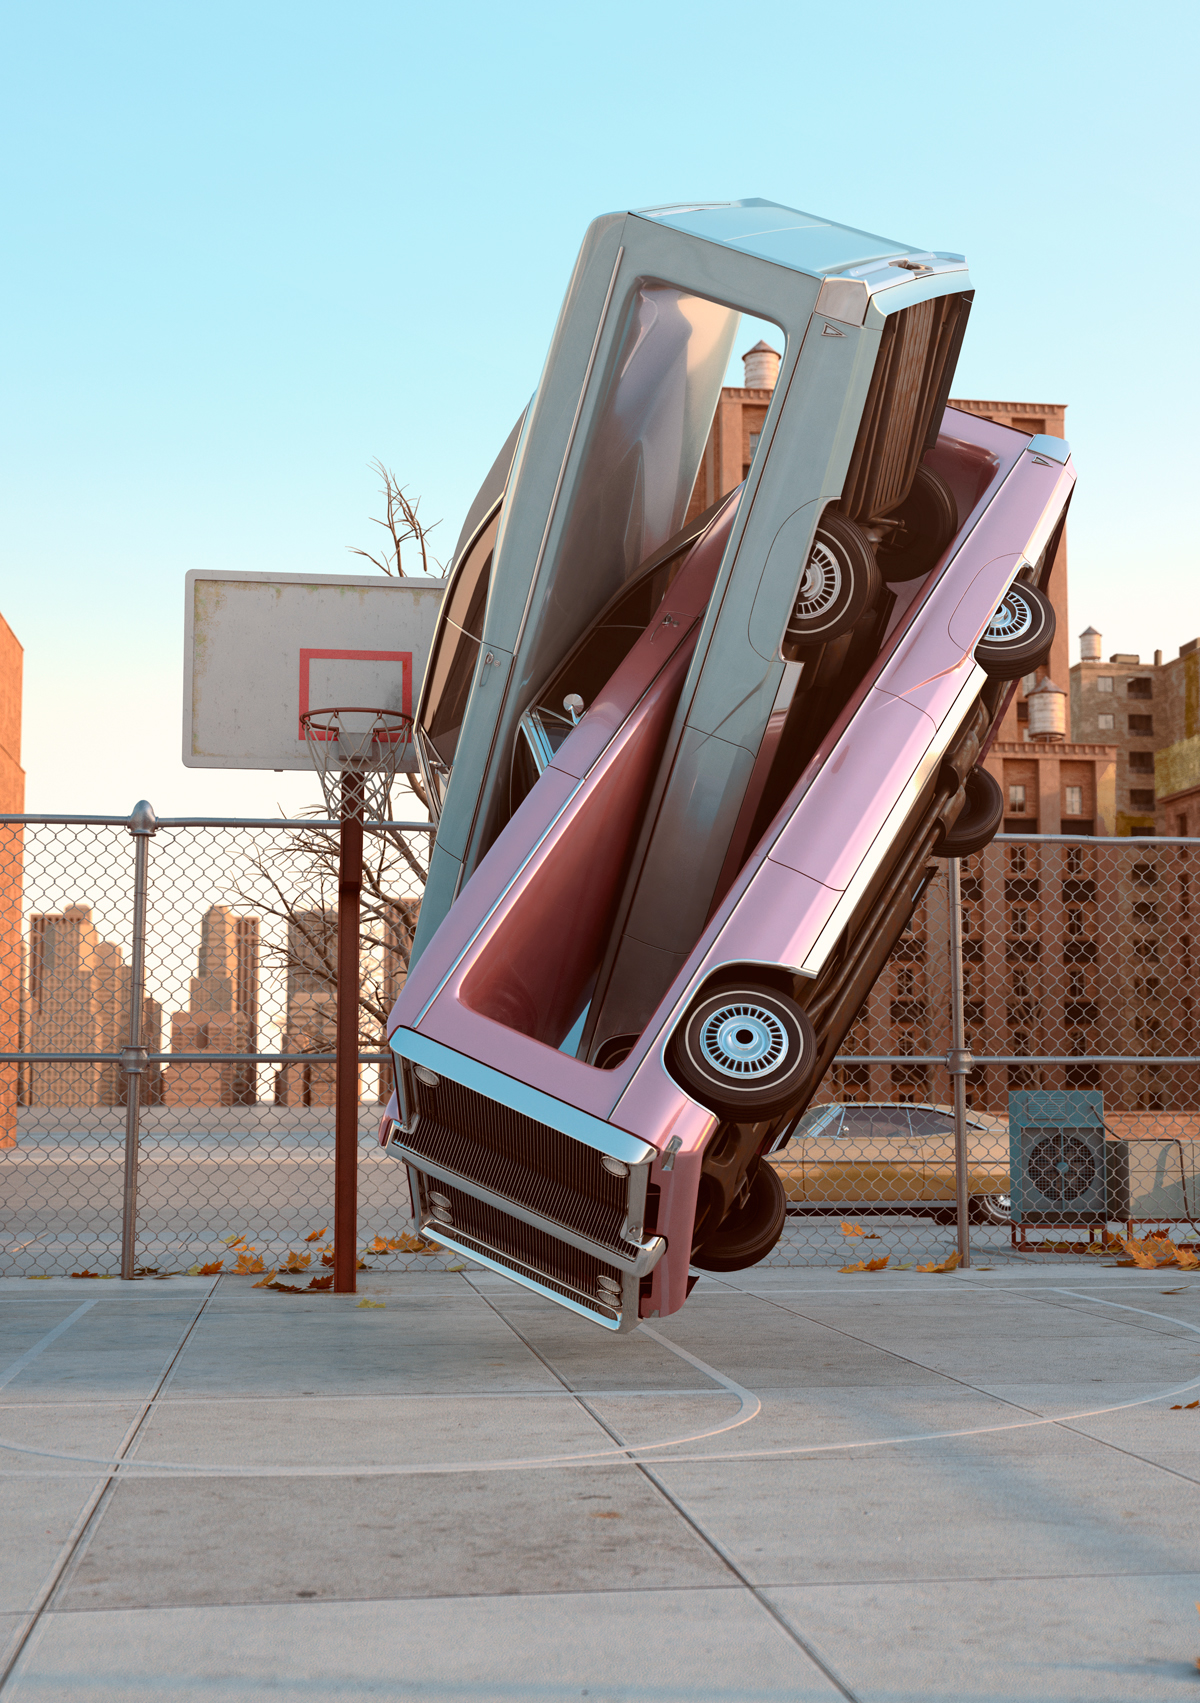 70's Retro Cars New York winter surreal automotive sculpture Aerobics 3D CGI